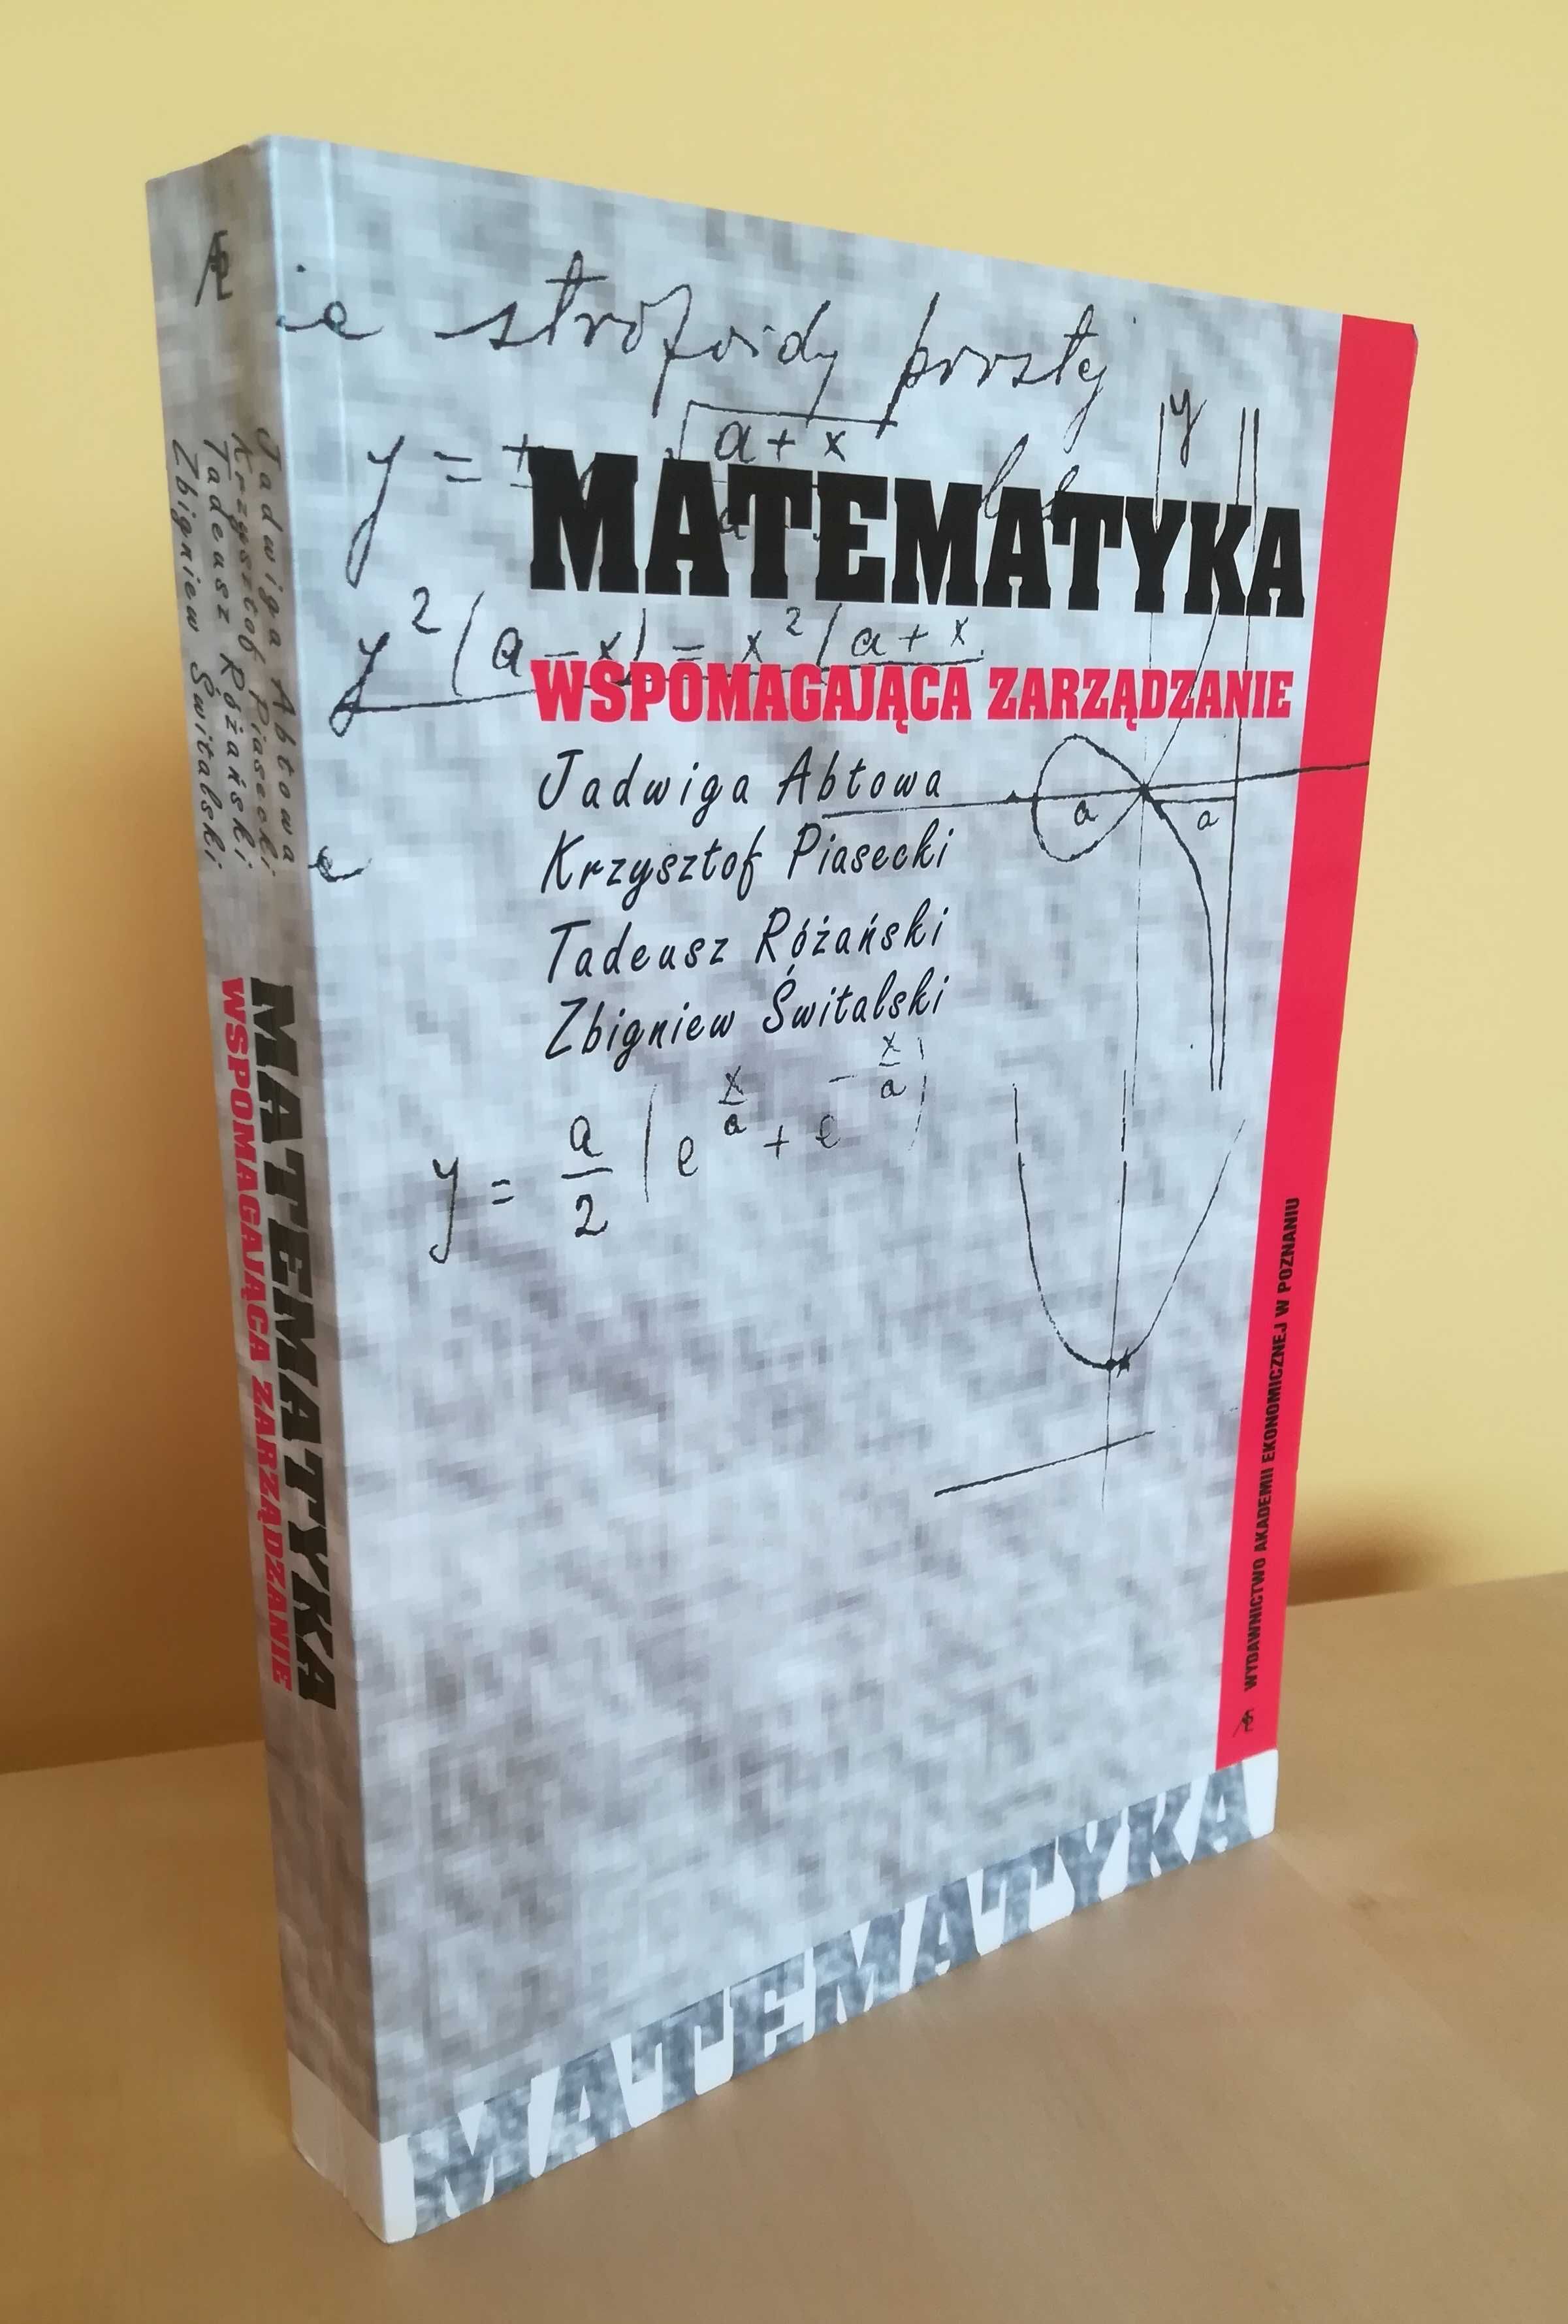 Matematyka wspomagająca zarządzanie, J. Abtowa, K. Piasecki